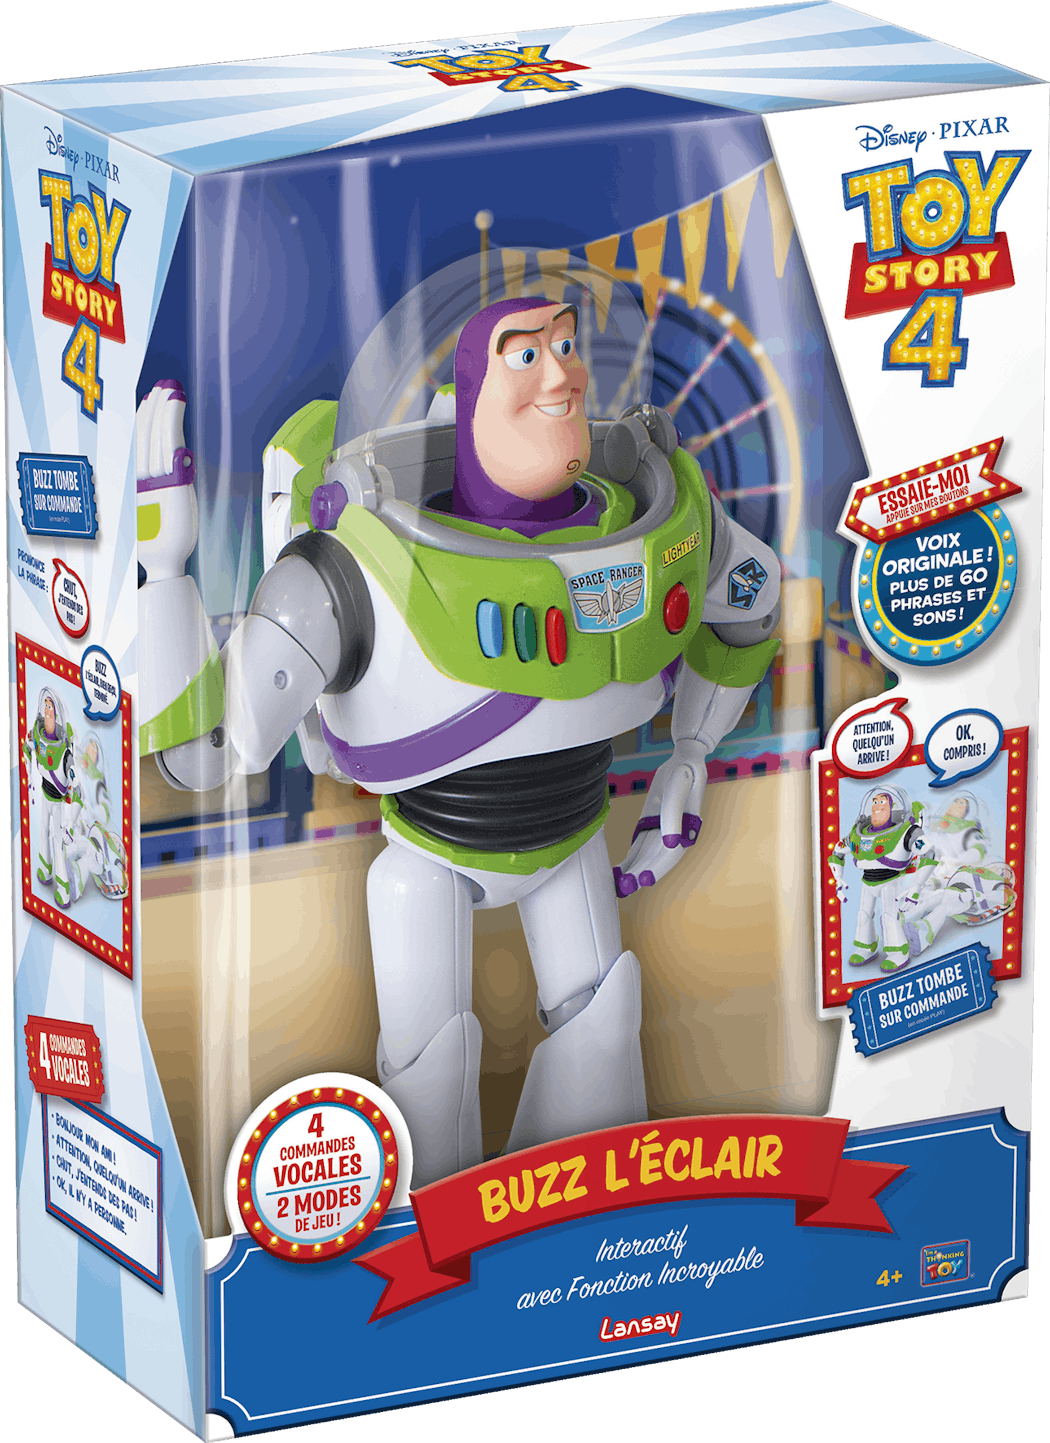 Les nouvelles figurines Toy Story s'animent pour plus d'interactivité avec  les enfants.